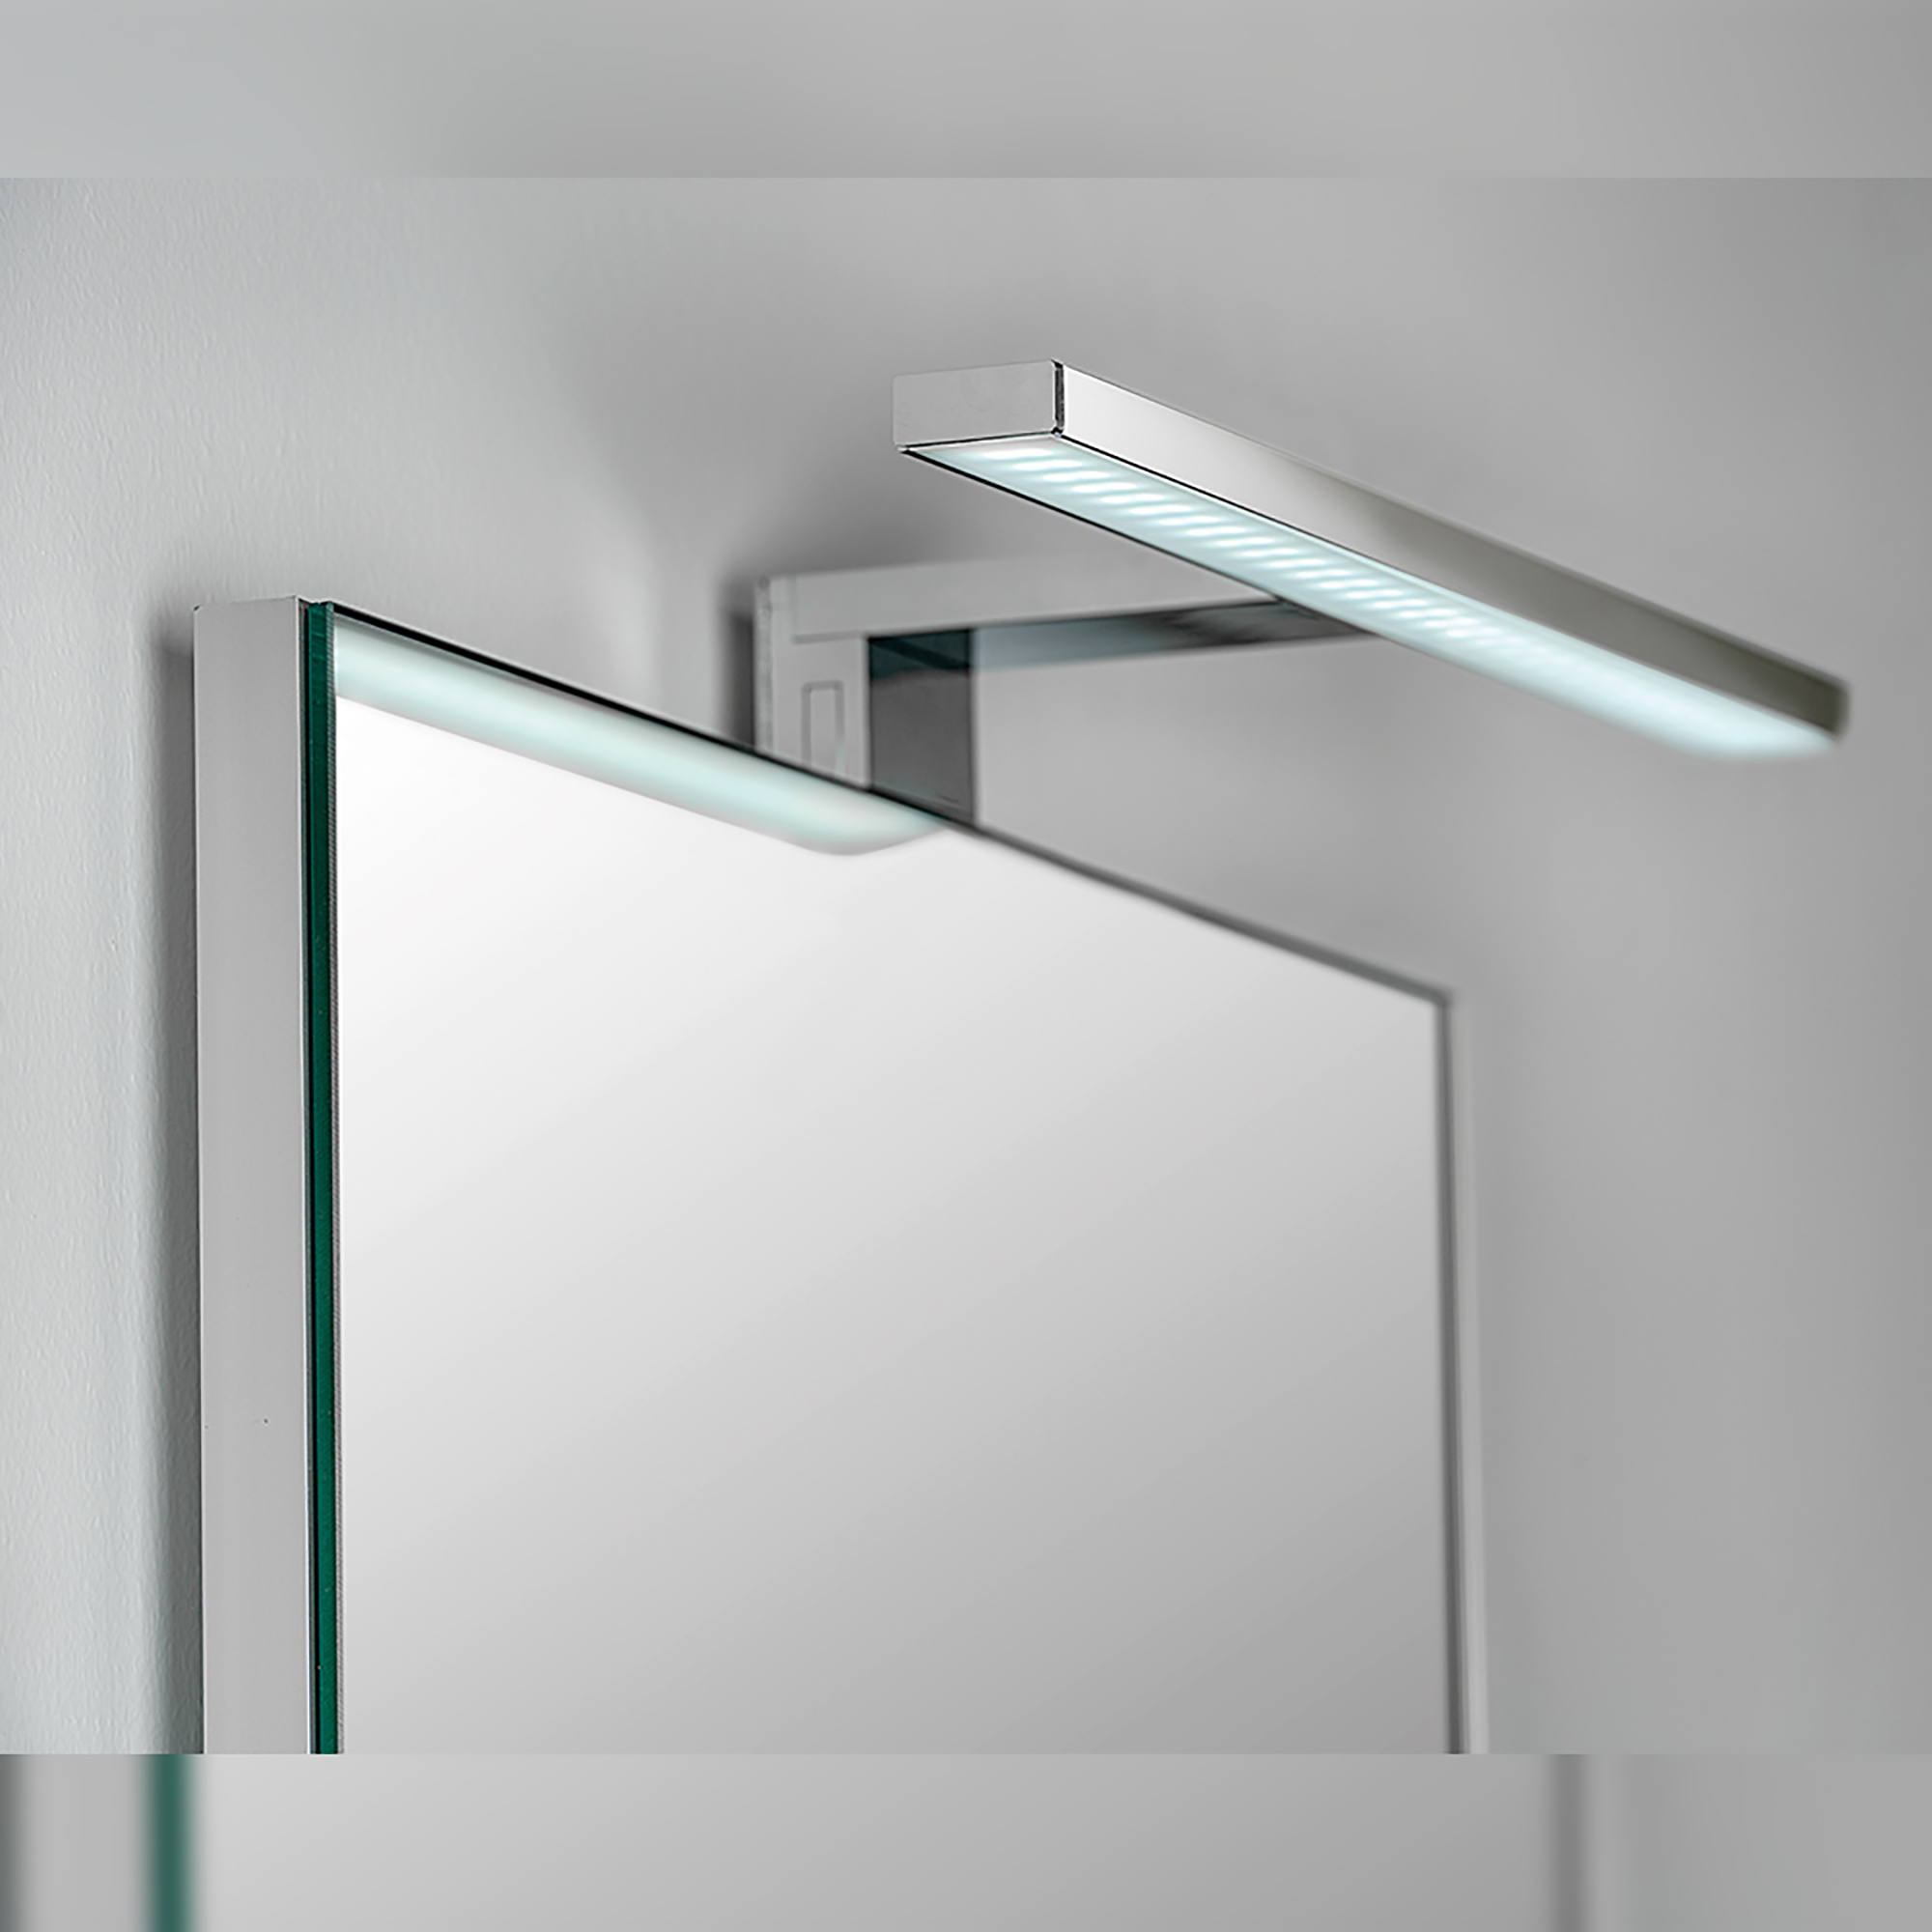  Applique LED pour miroir de salle de bain, 450 mm, IP44, Lumiere blanc froid, Aluminium et plastique, Chrome